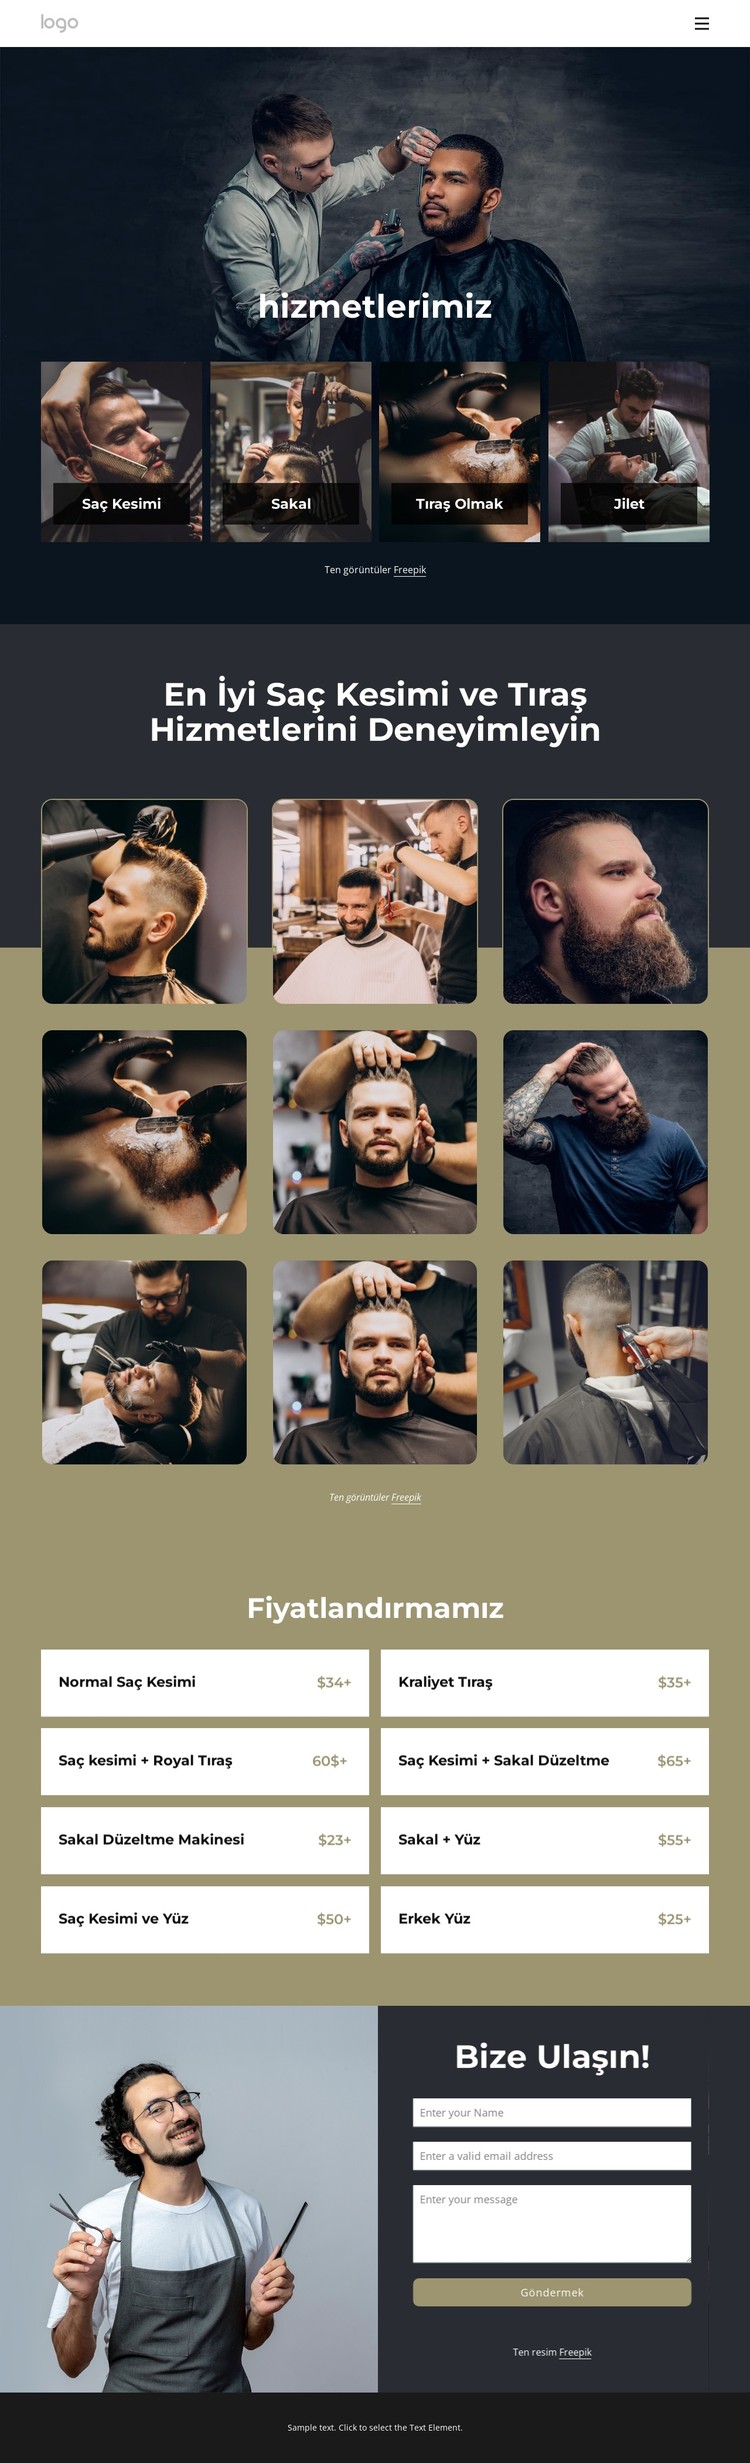 En iyi saç kesimi ve tıraş hizmetleri CSS Şablonu